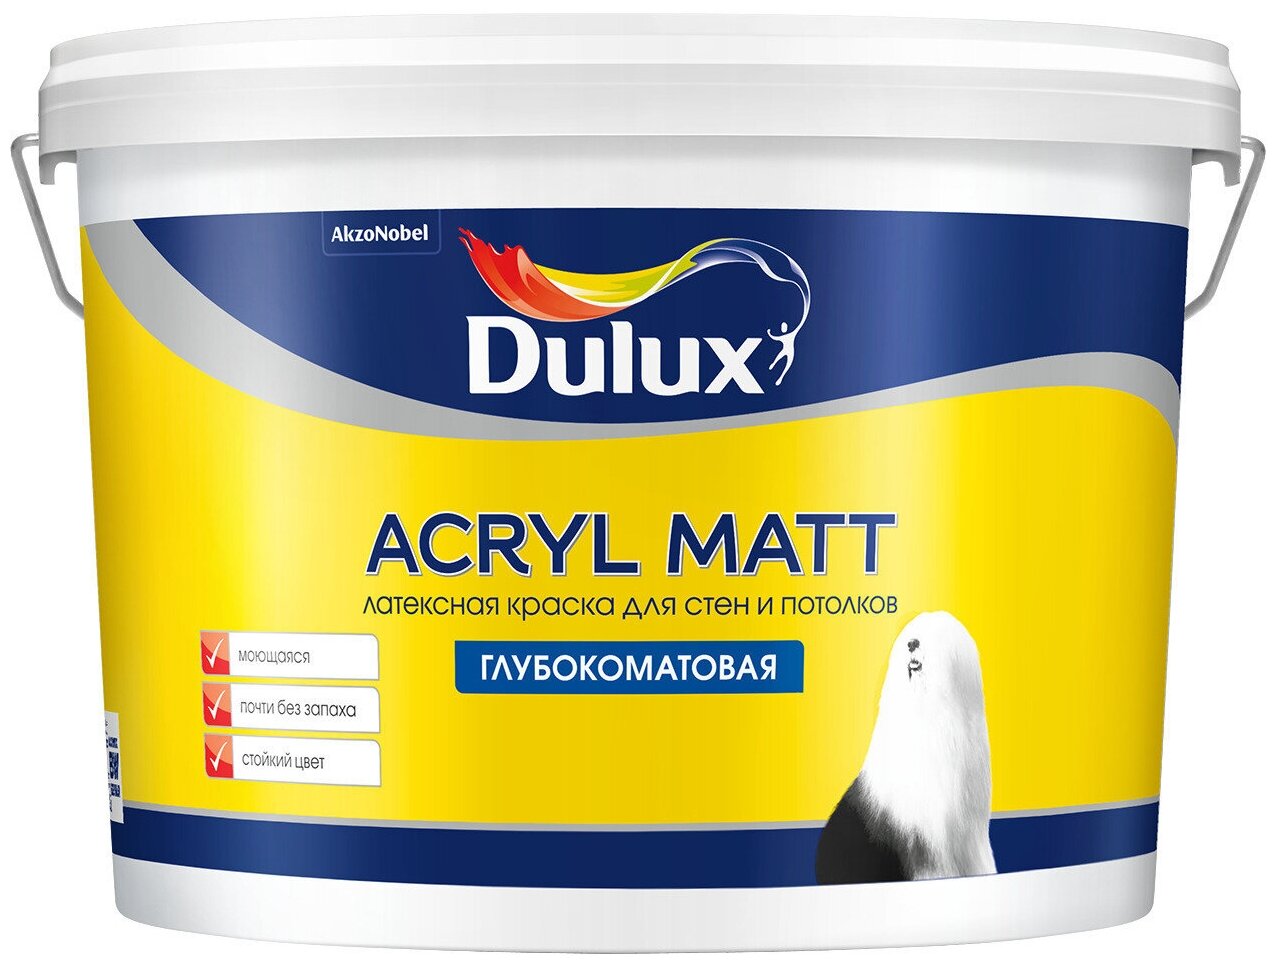 Dulux Acryl Matt 9, , 50GG 40/064 